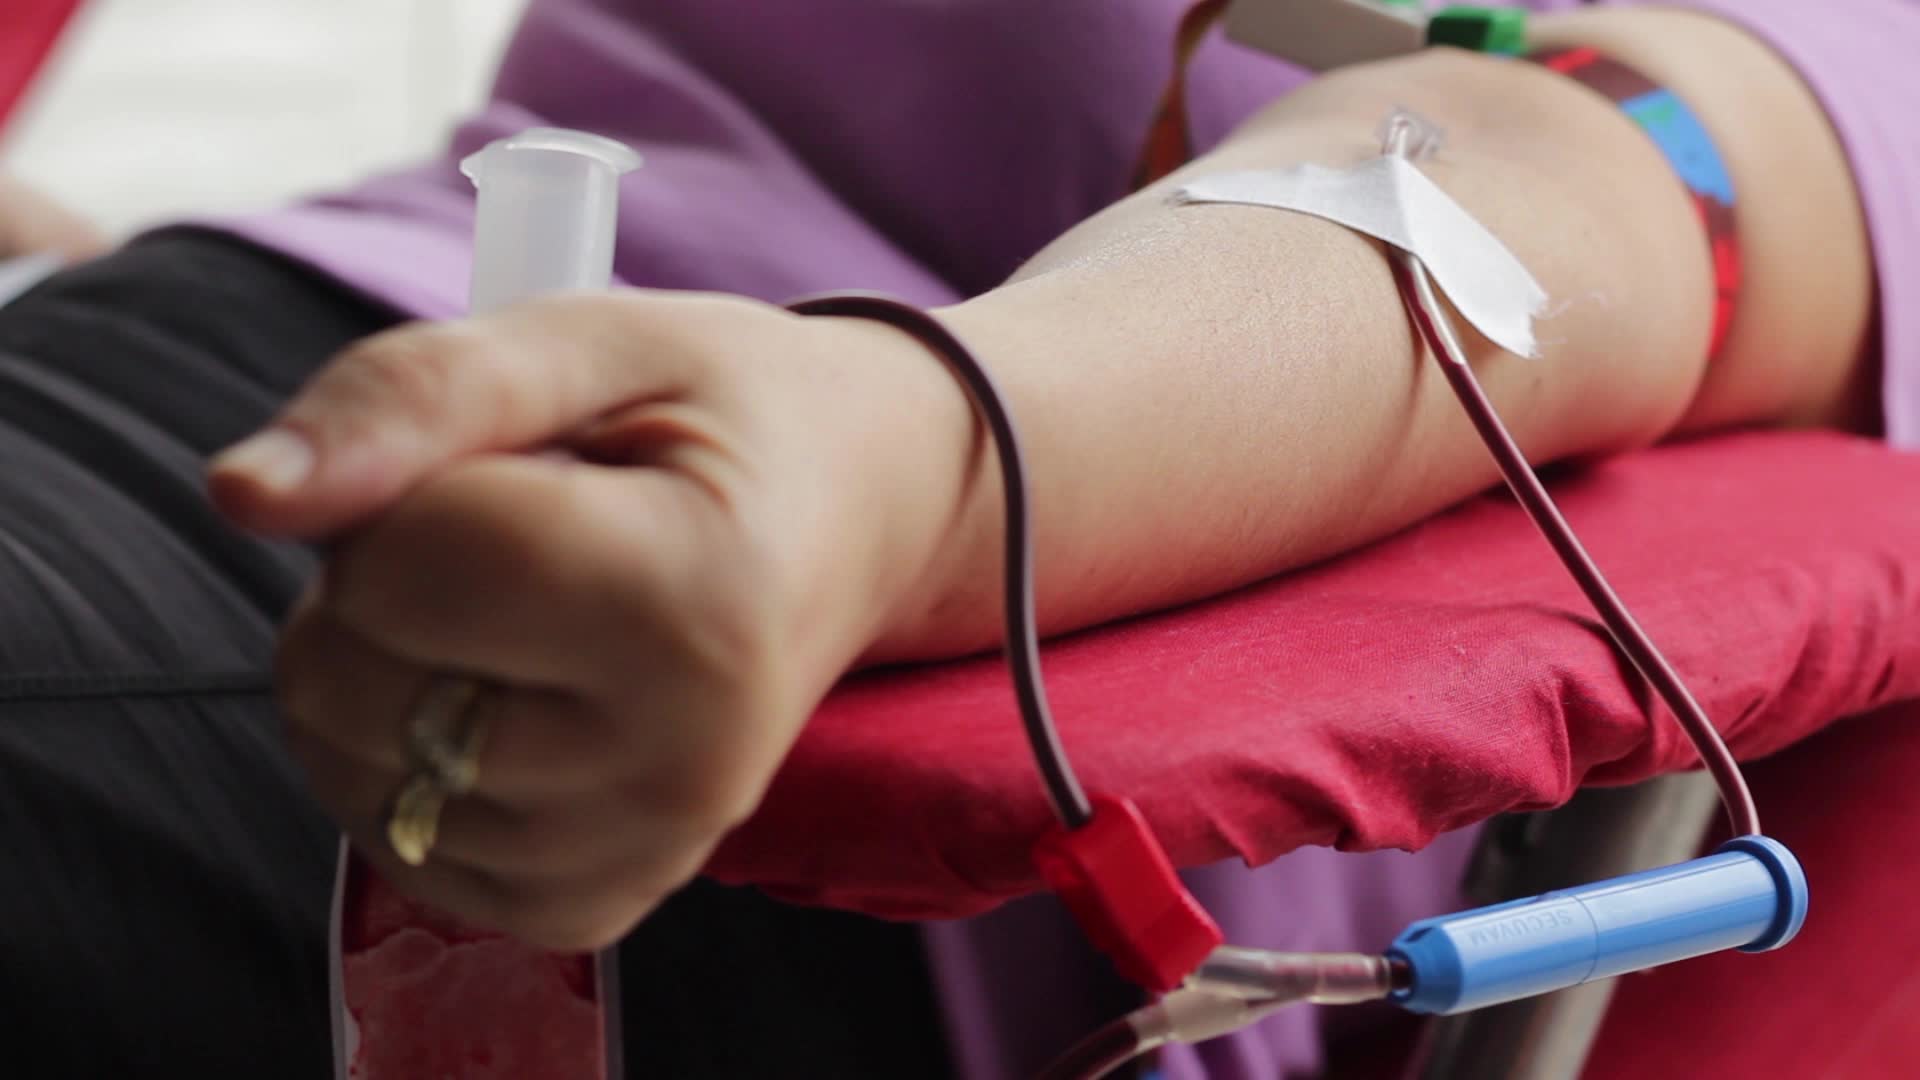 Все доноры проходят проверку перед сдачей крови. Фото The Guardian